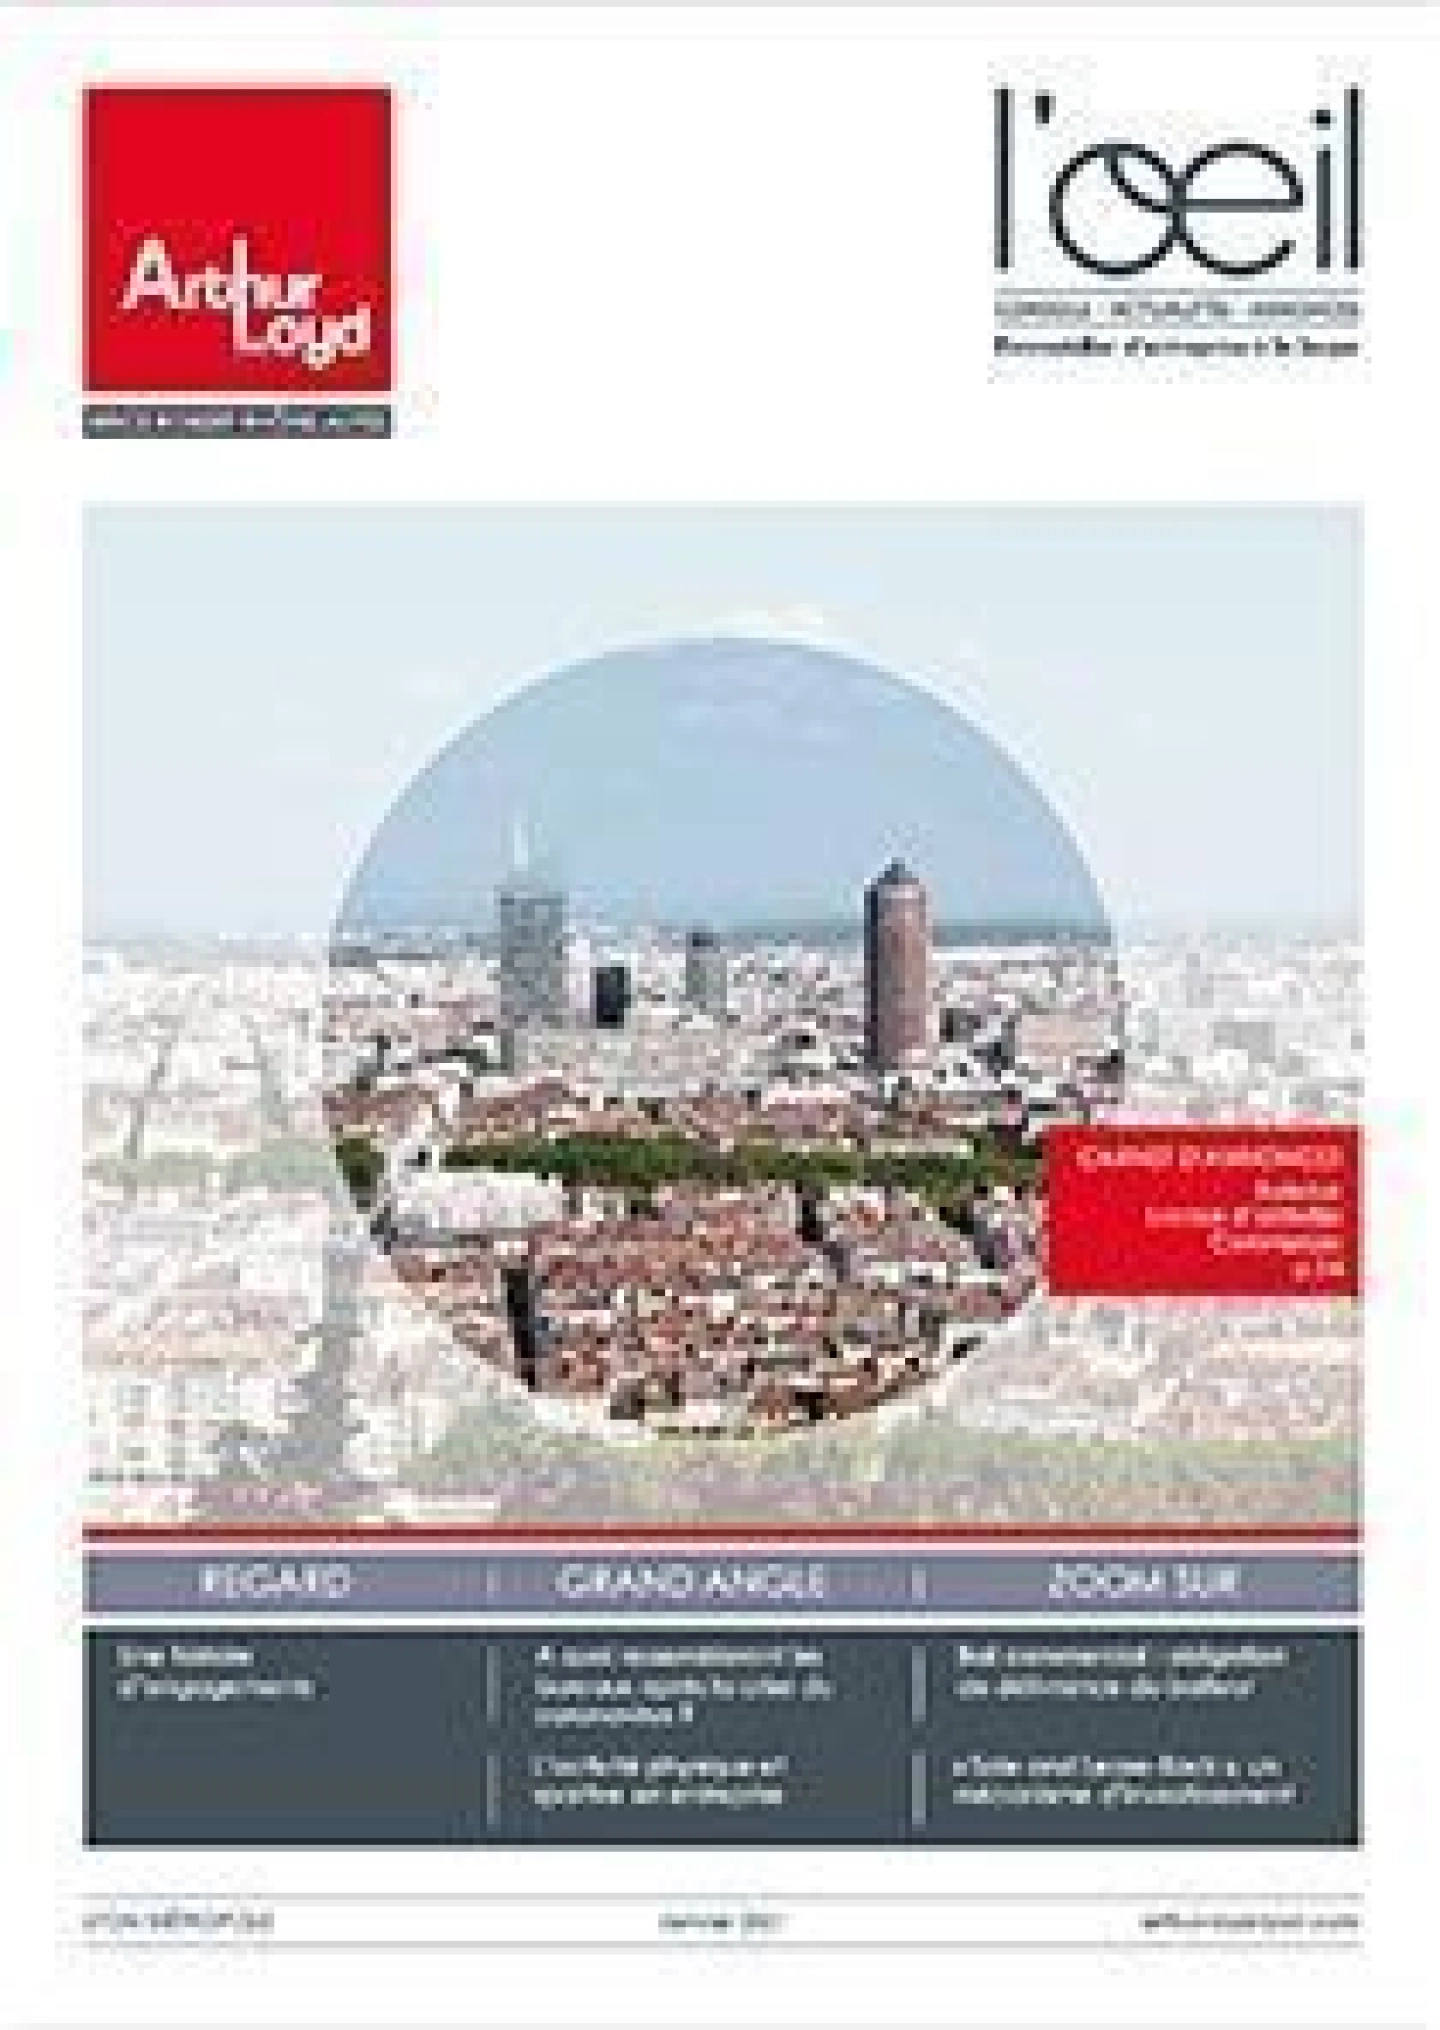 Couverture du magazine d'immobilier d'entreprise à Lyon